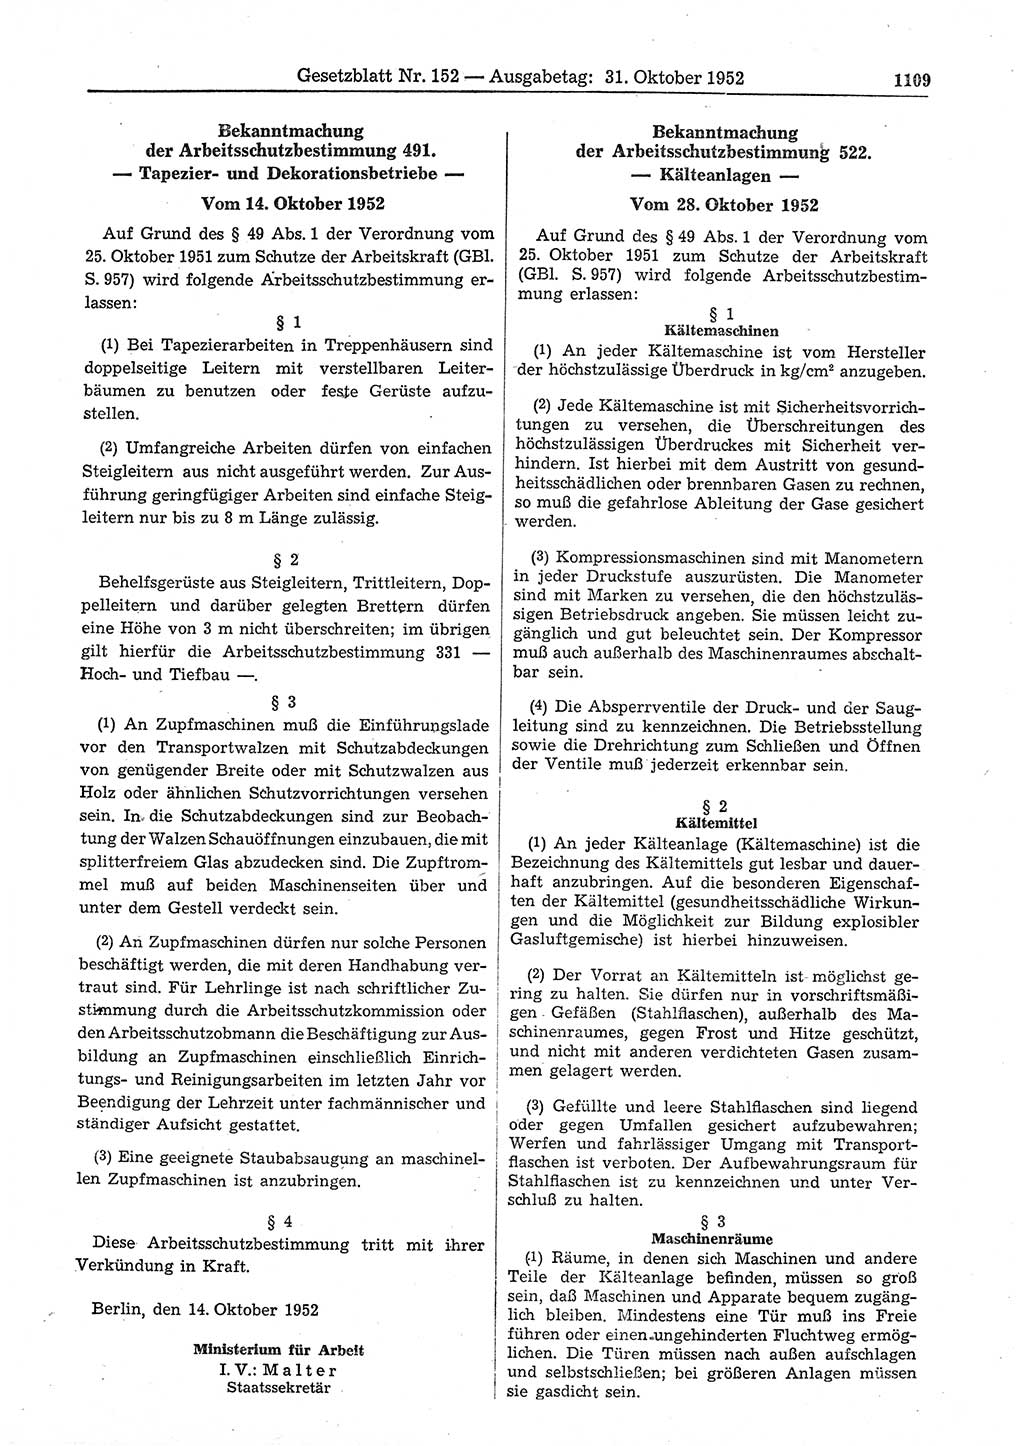 Gesetzblatt (GBl.) der Deutschen Demokratischen Republik (DDR) 1952, Seite 1109 (GBl. DDR 1952, S. 1109)